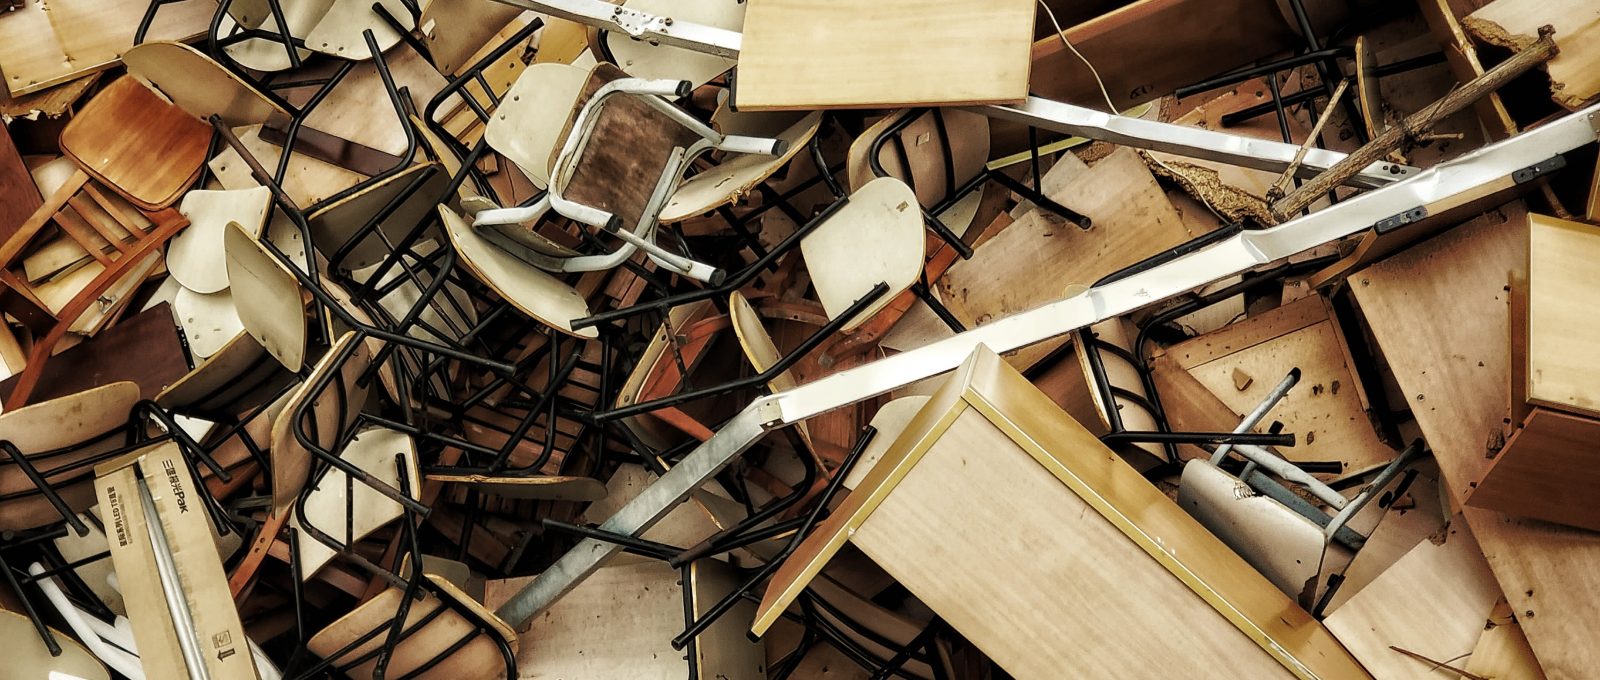 Nieużywane meble, krzesła i biurka wyrzucone na składowisko